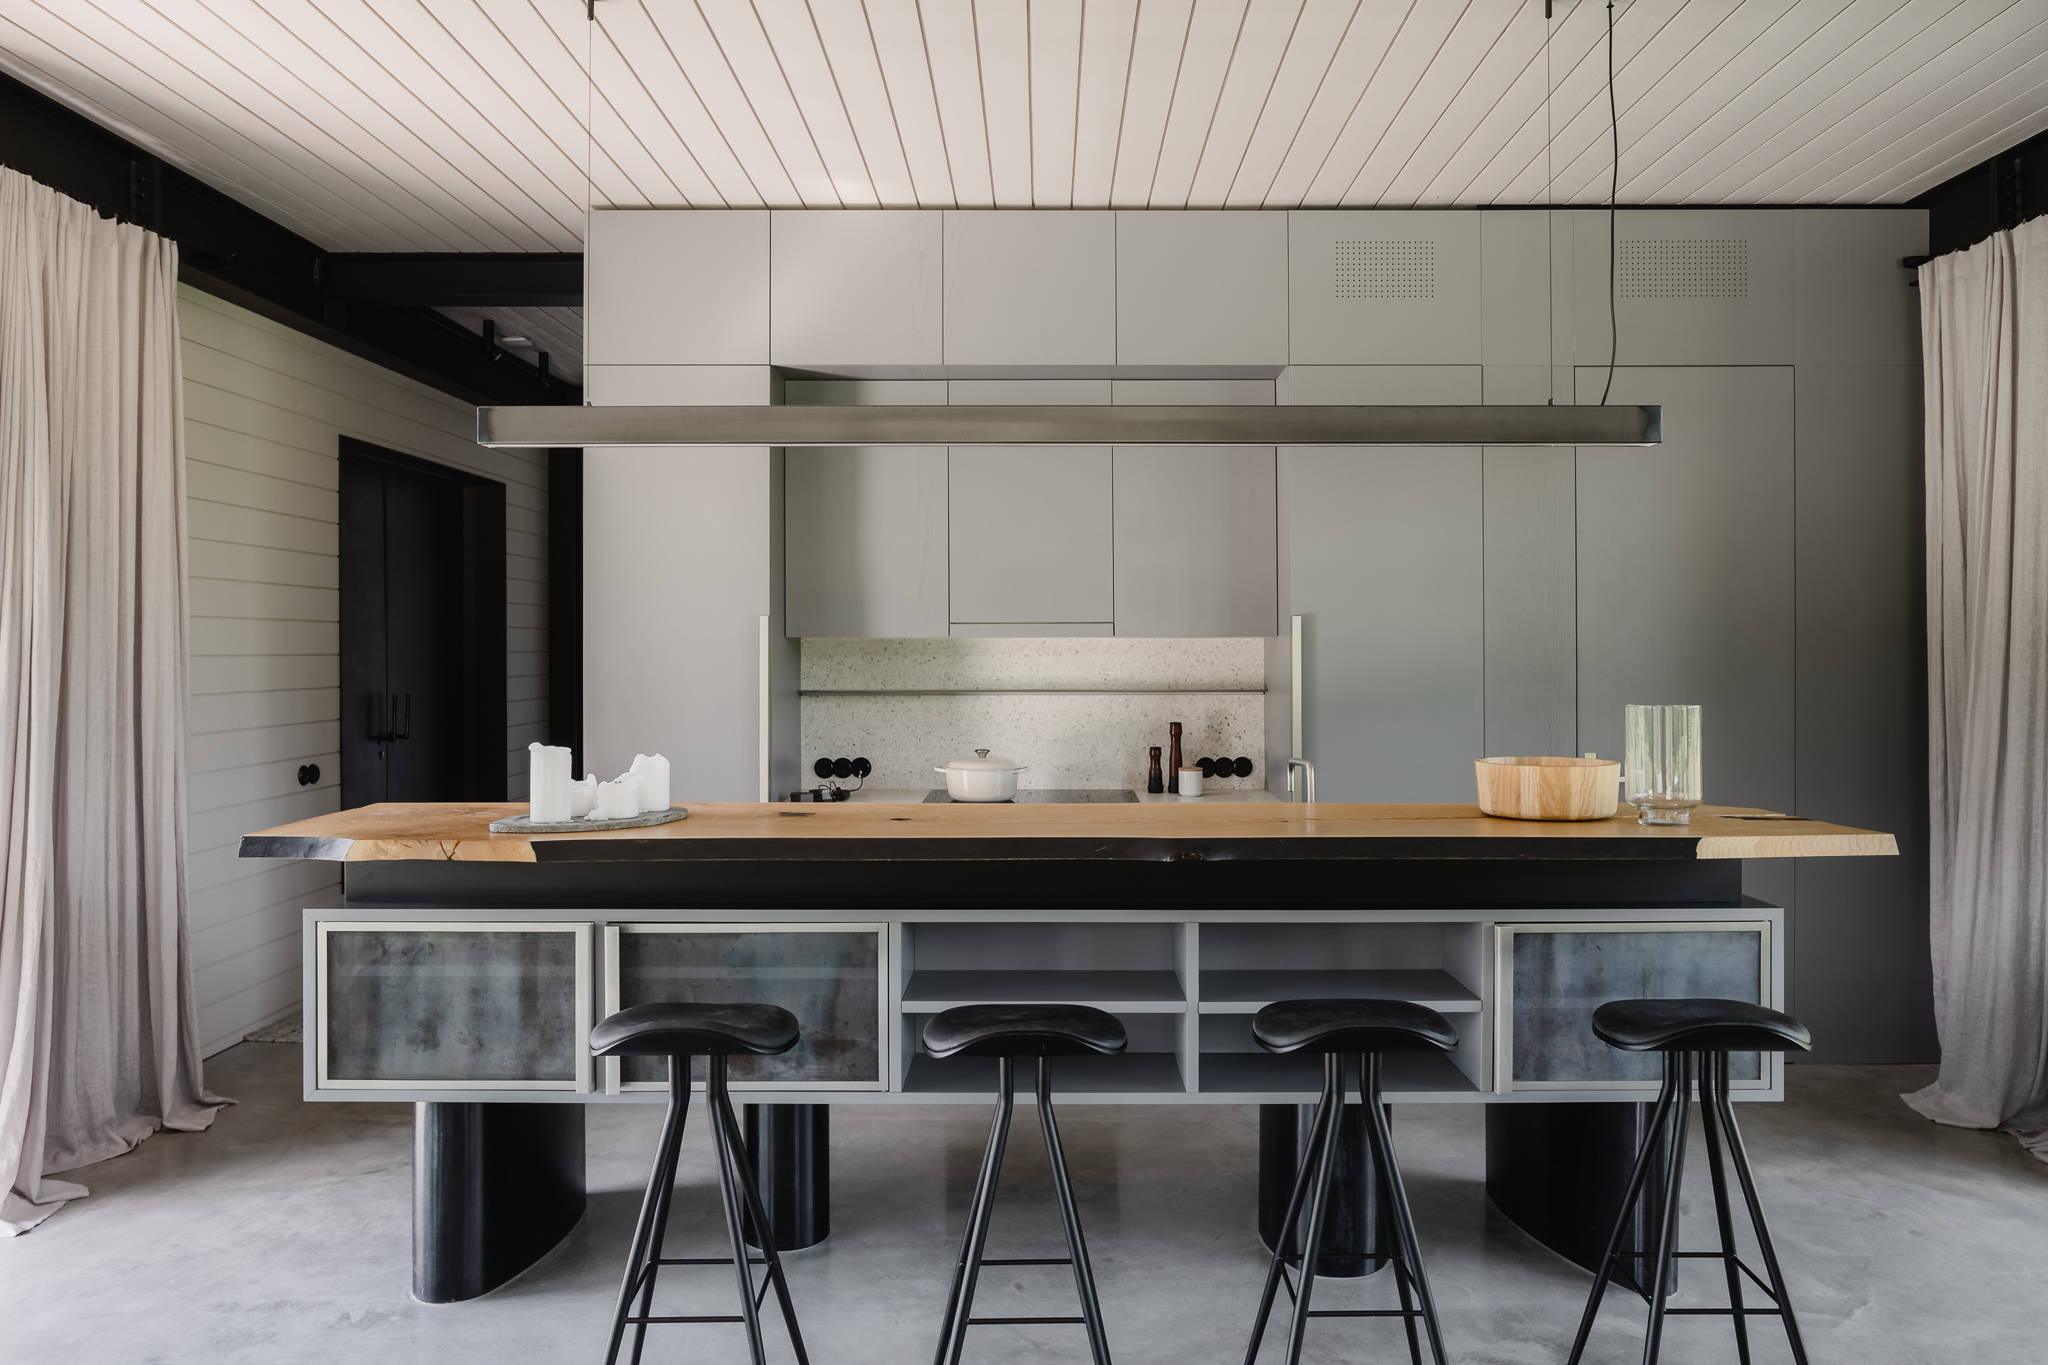 Kuchyň v šedé a černé v moderním stylu s barovými židlemi